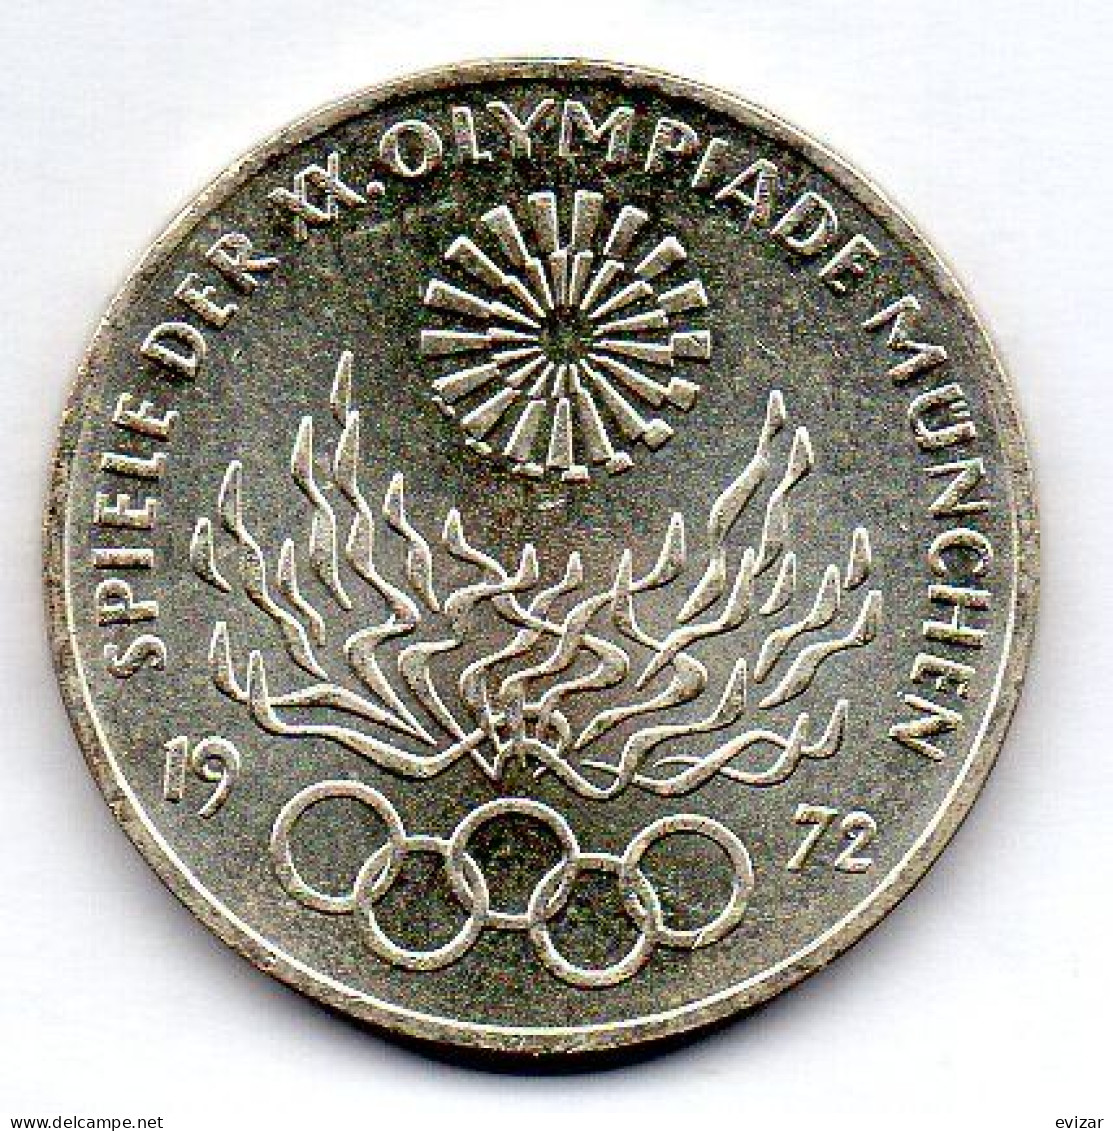 GERMANY - FEDERAL REPUBLIC, 10 Mark, Silver, Year 1972-G, KM # 135 - 10 Marcos